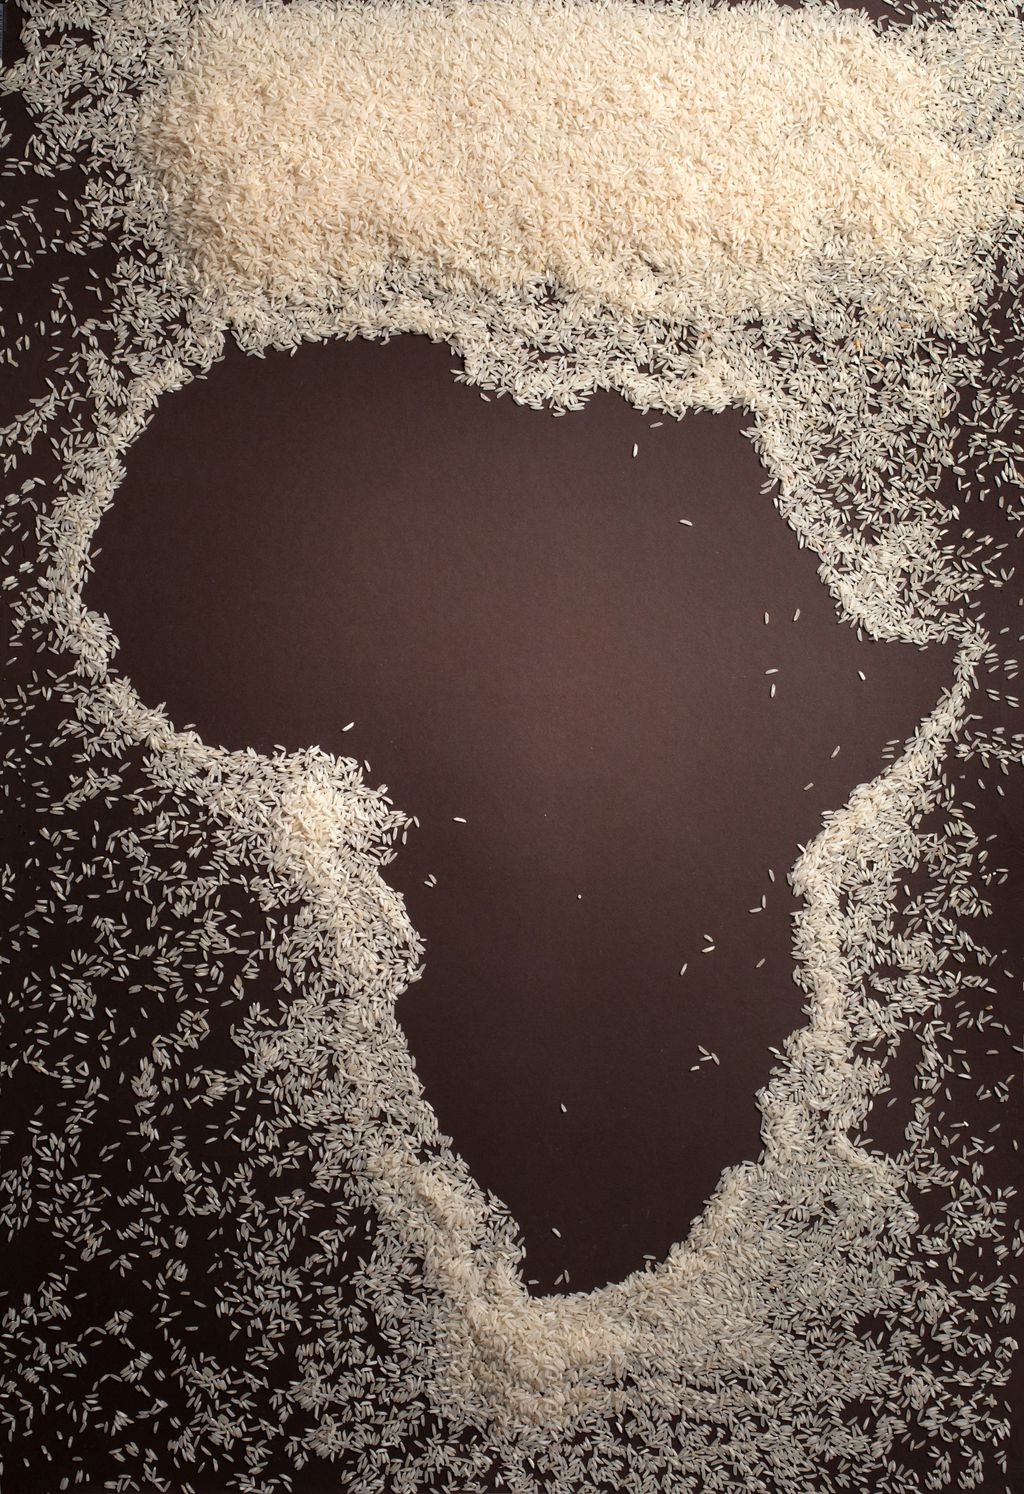 Africa e riso